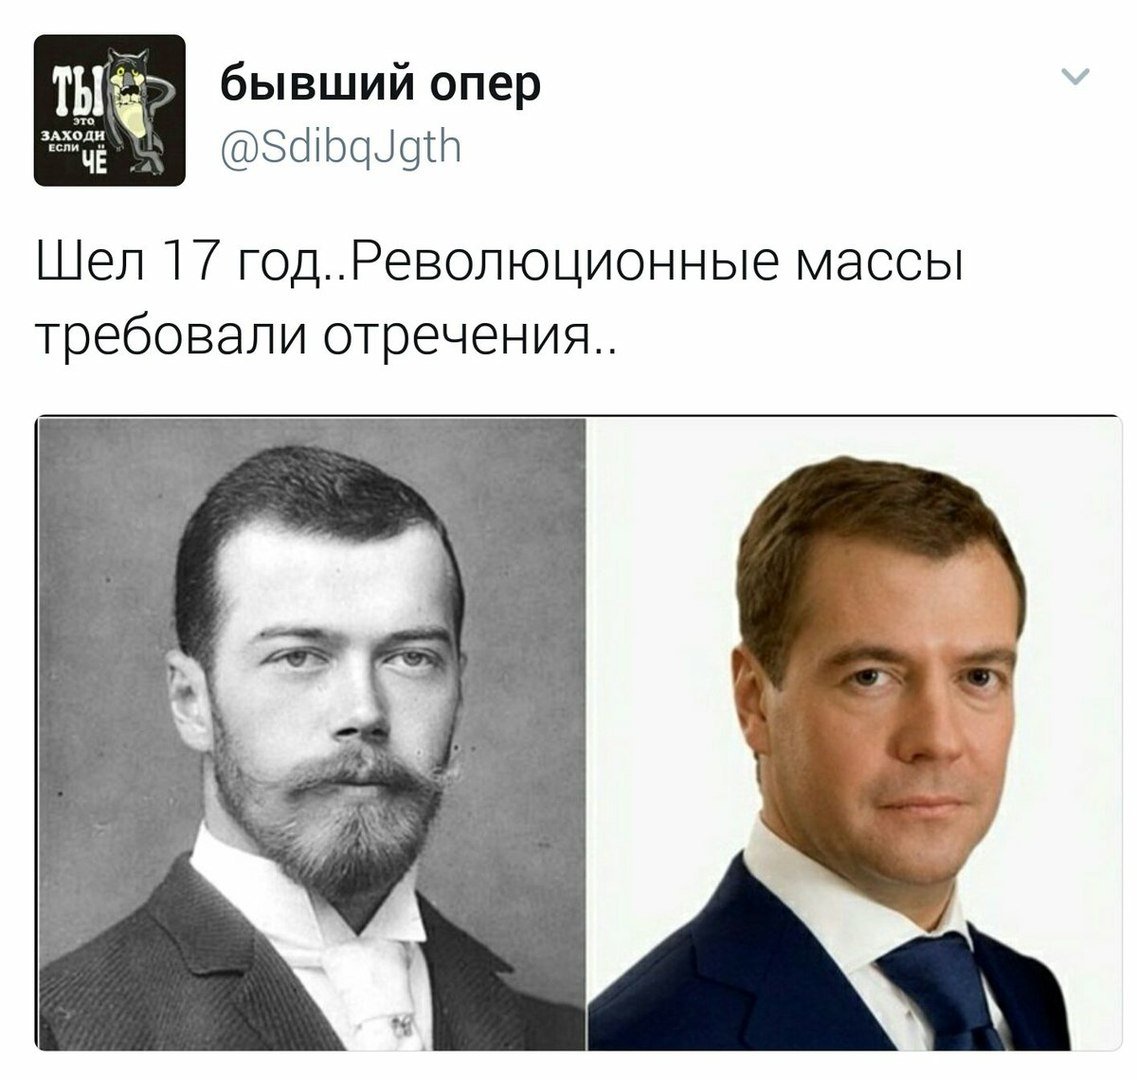 Дмитрий Анатольевич Медведев и Николай 2